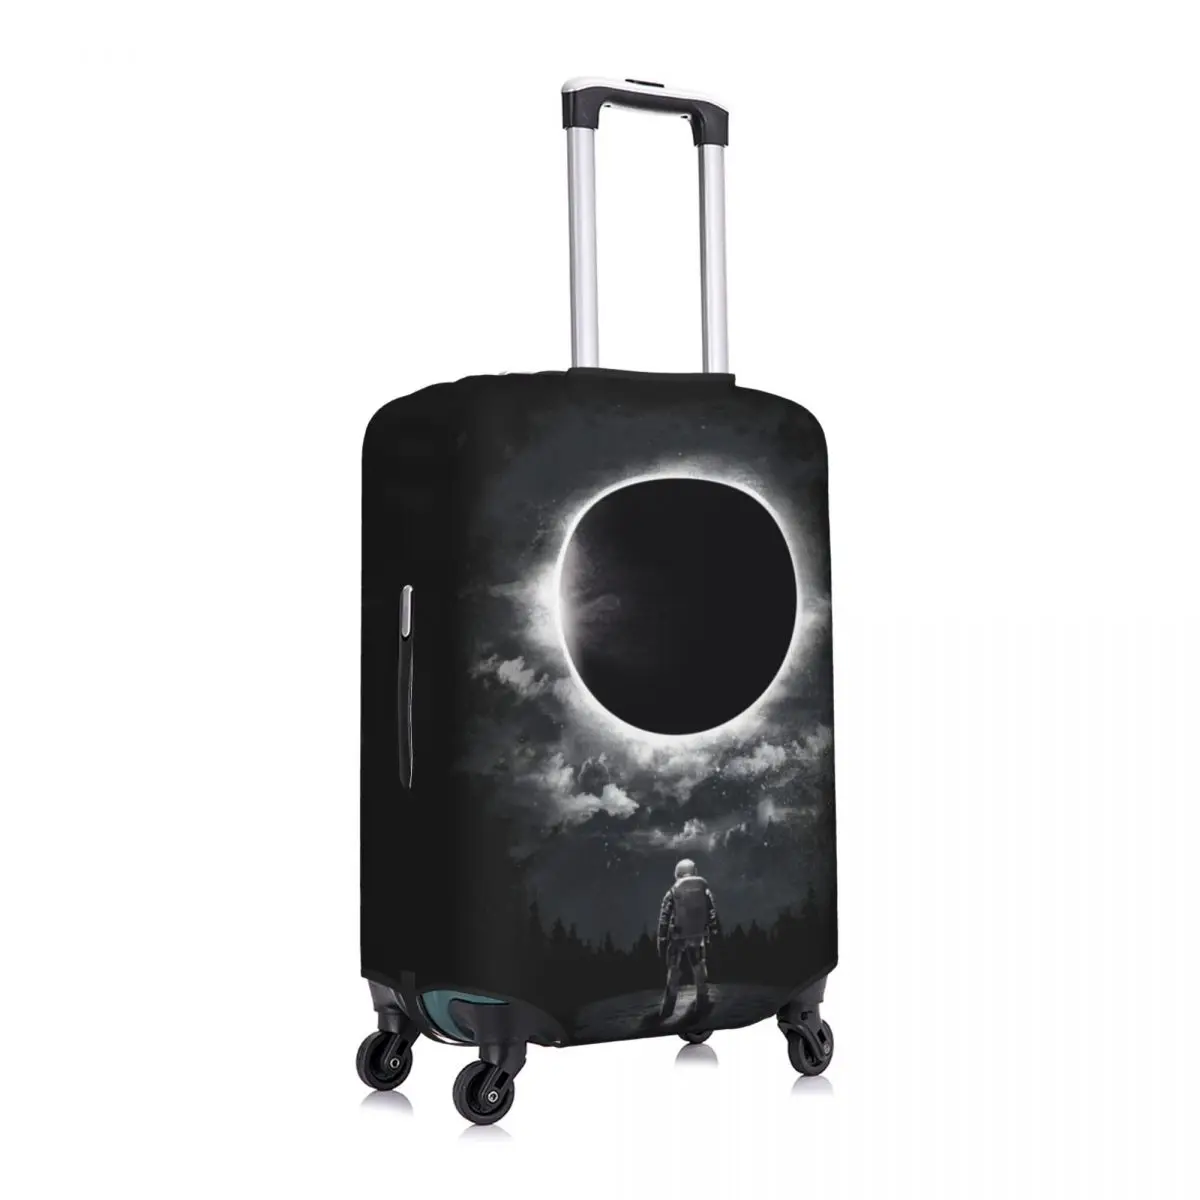 Napfogyatkozás bőrönd huzat Holiday Astronaut rugalmas poggyász kellékek Üzleti védelem - 2